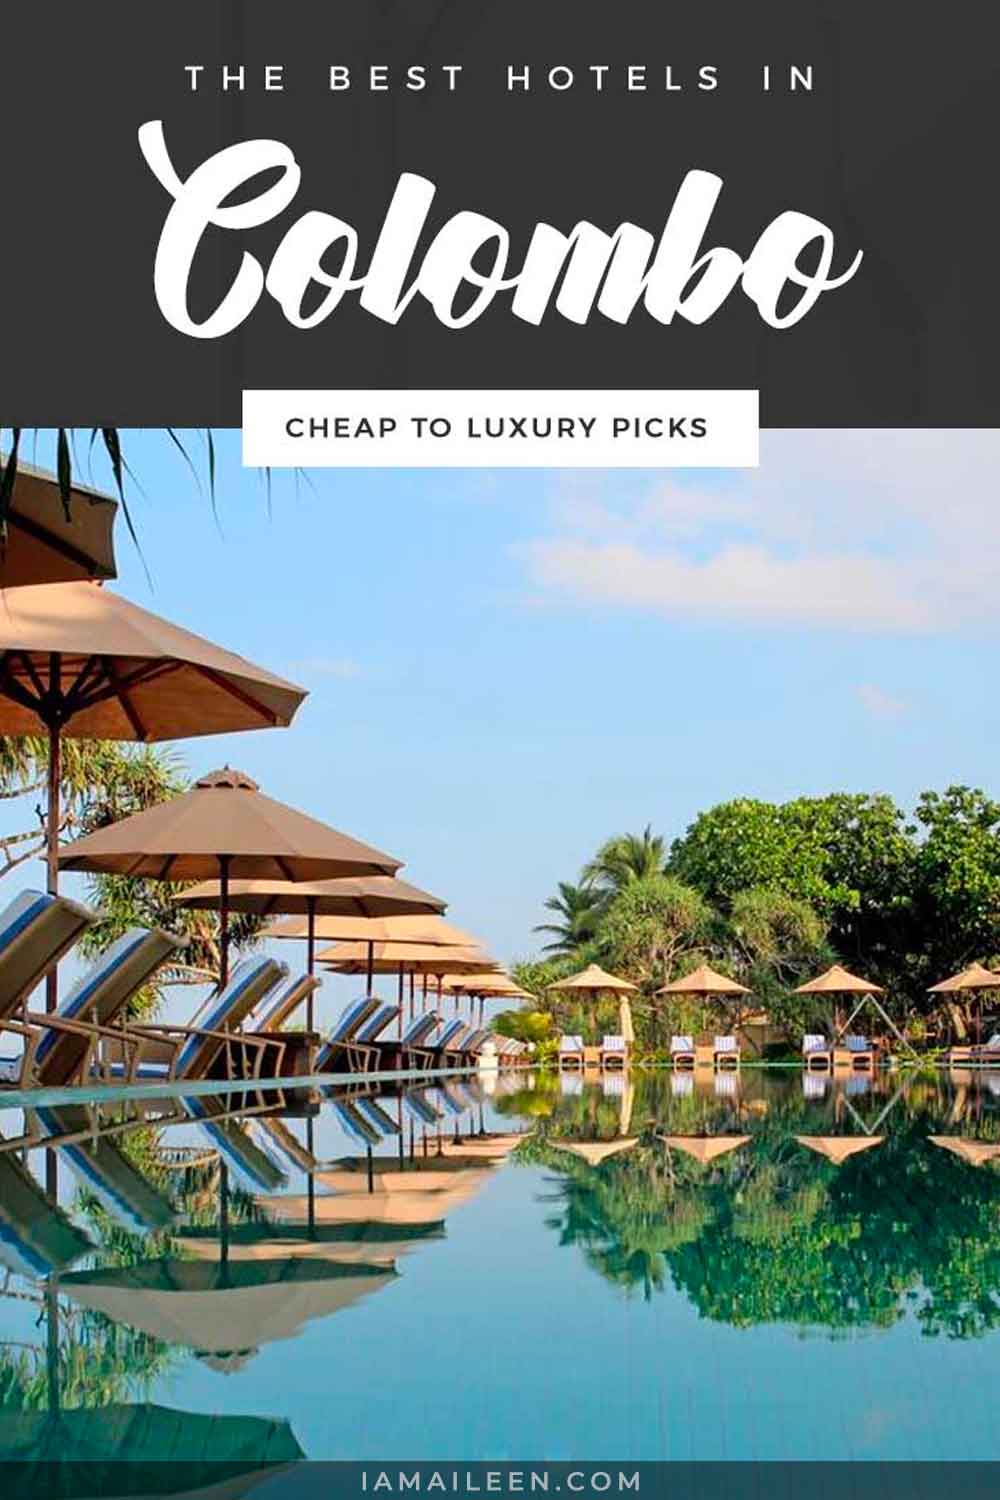 Best Hotels in Colombo